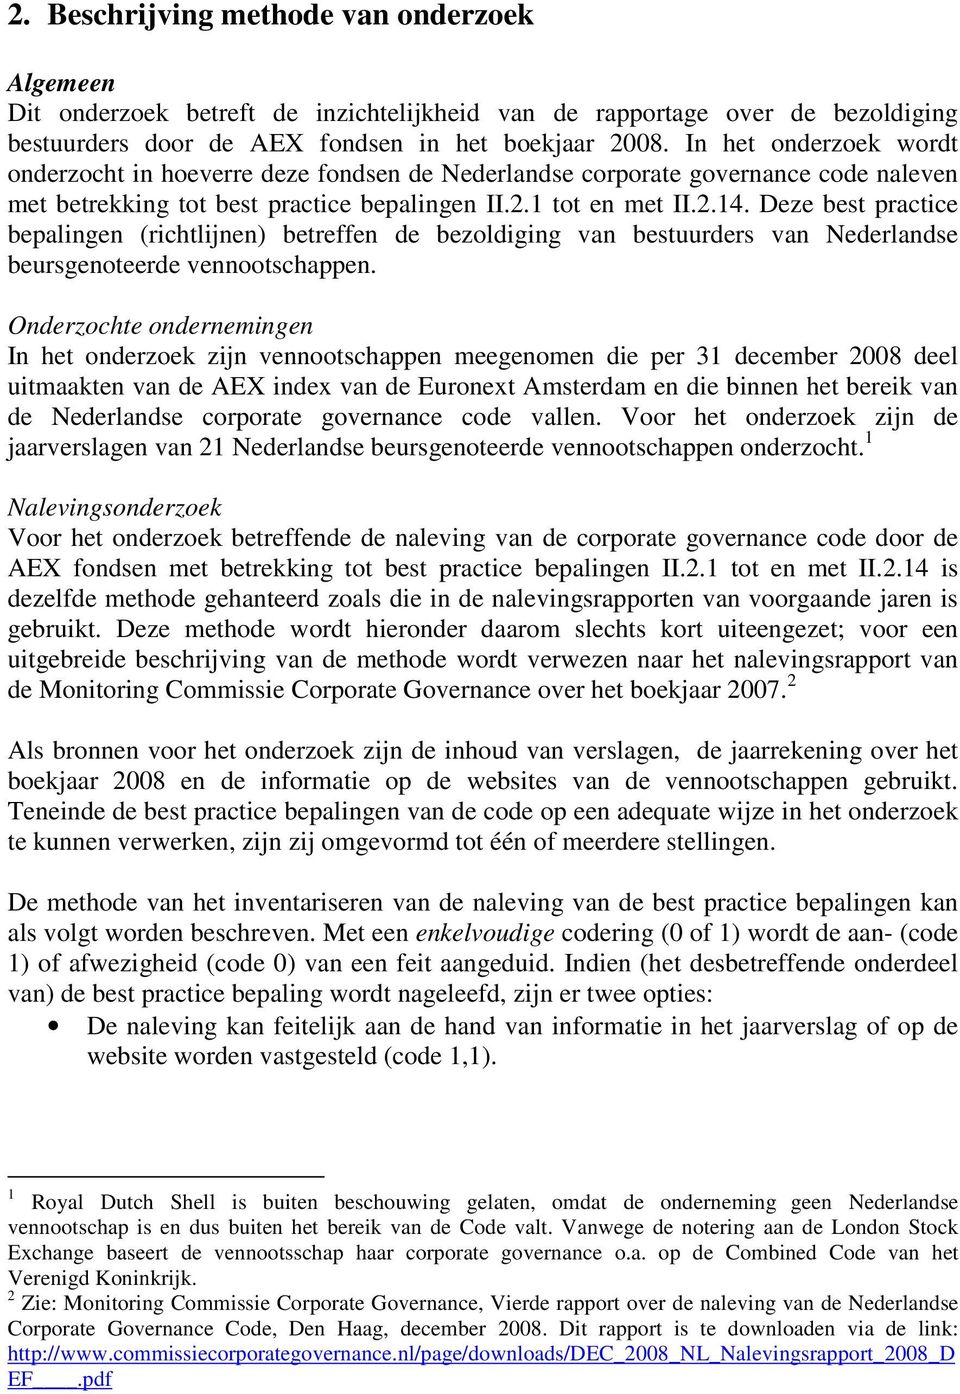 Deze best practice bepalingen (richtlijnen) betreffen de bezoldiging van bestuurders van Nederlandse beursgenoteerde vennootschappen.